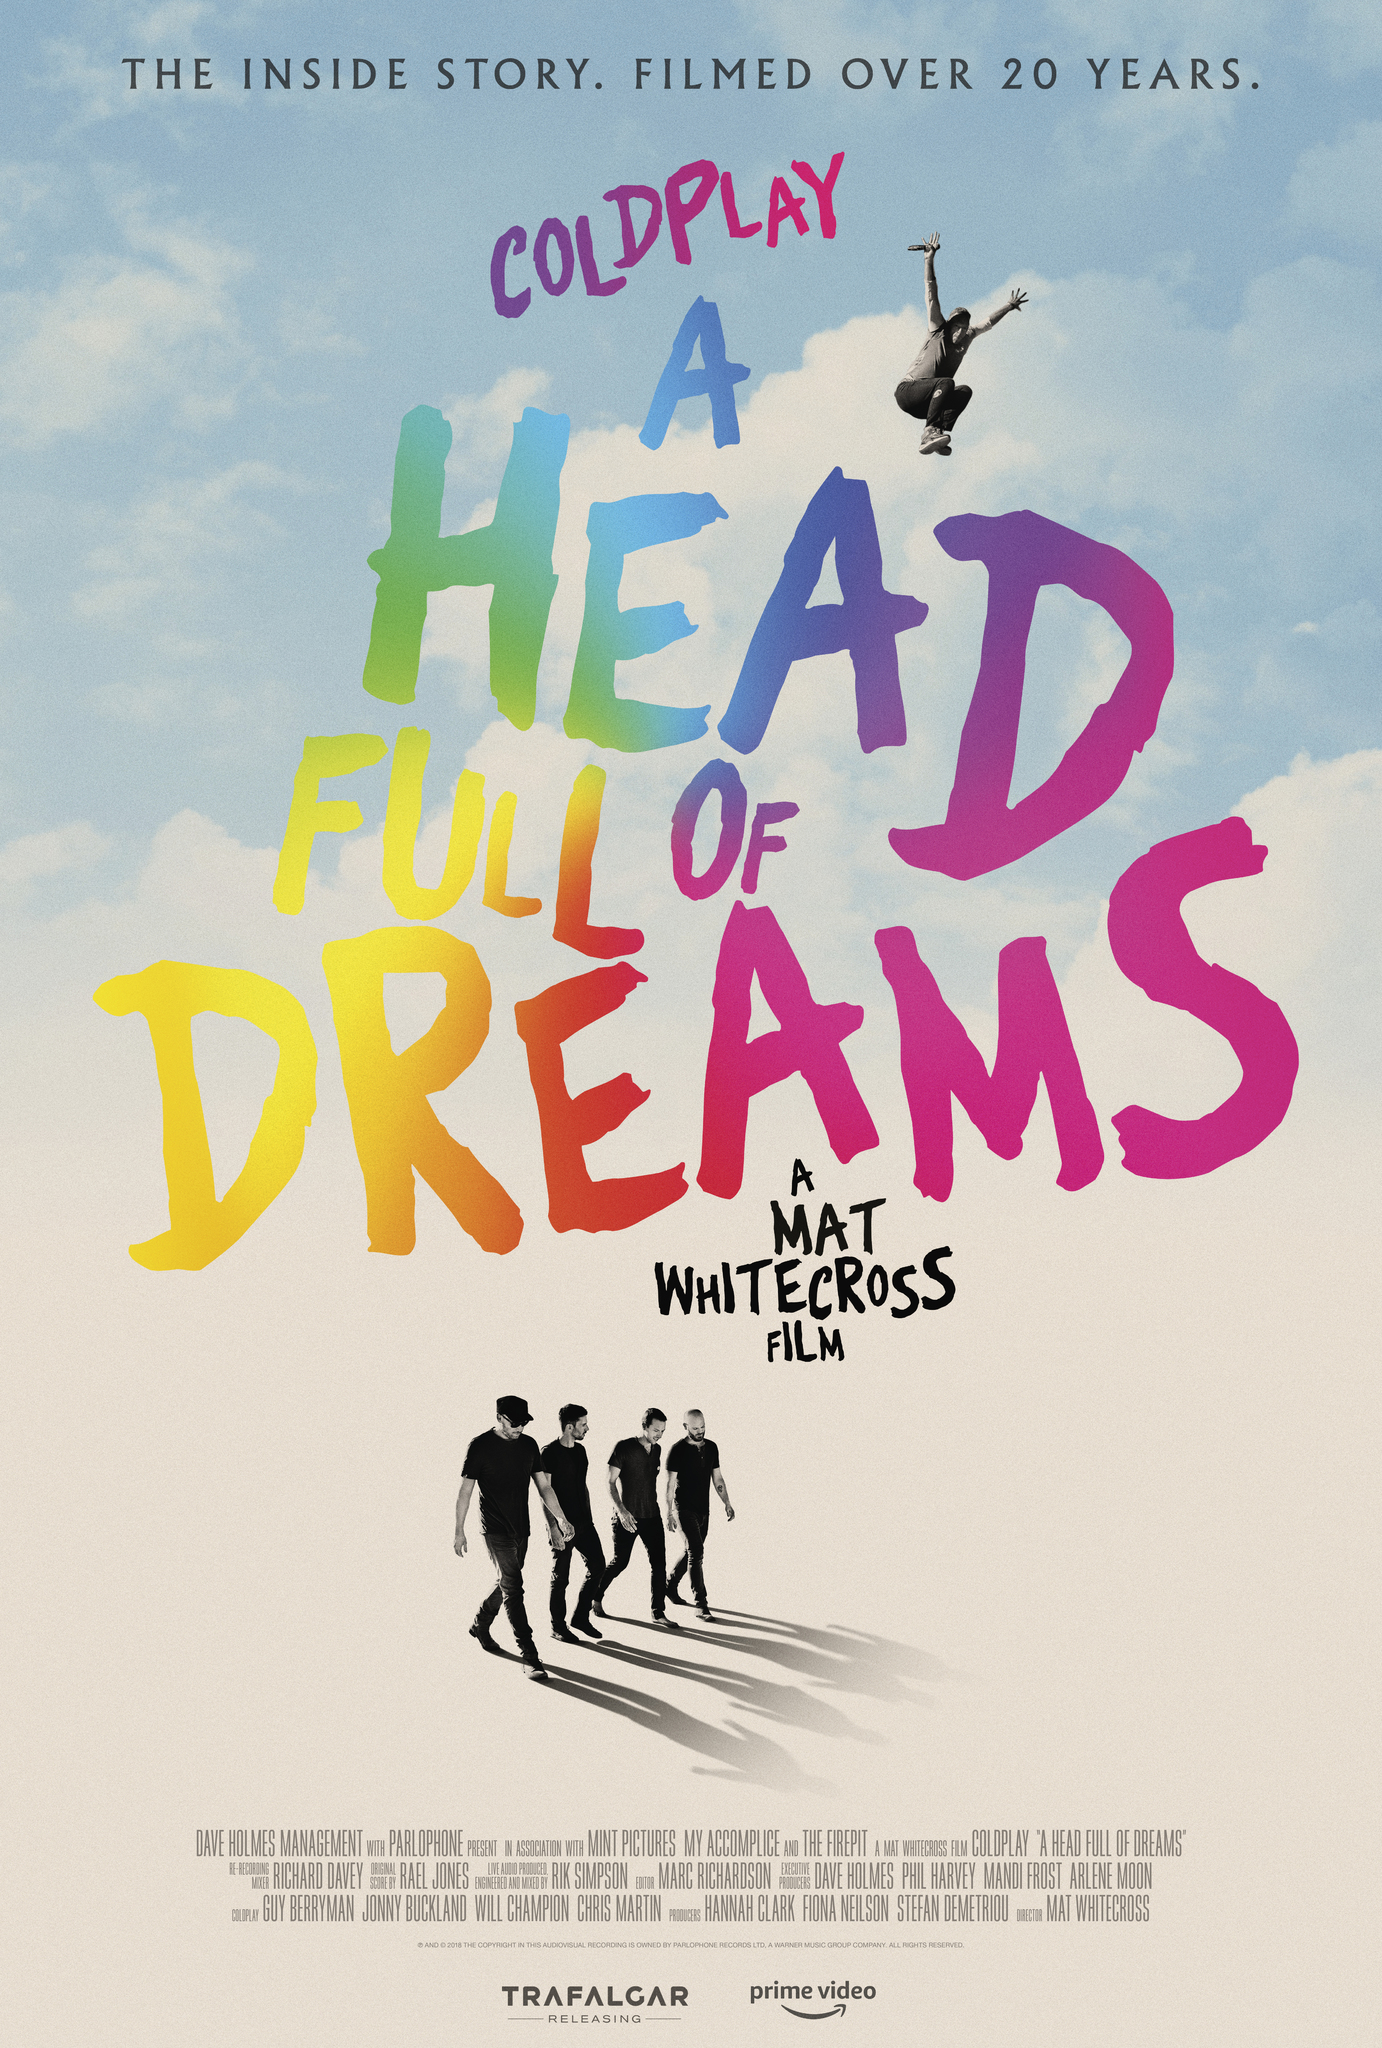 ดูหนังออนไลน์ฟรี Coldplay A Head Full of Dreams (2018) โคลด์เพลย์ อะเฮดฟูลออฟดรีมส์